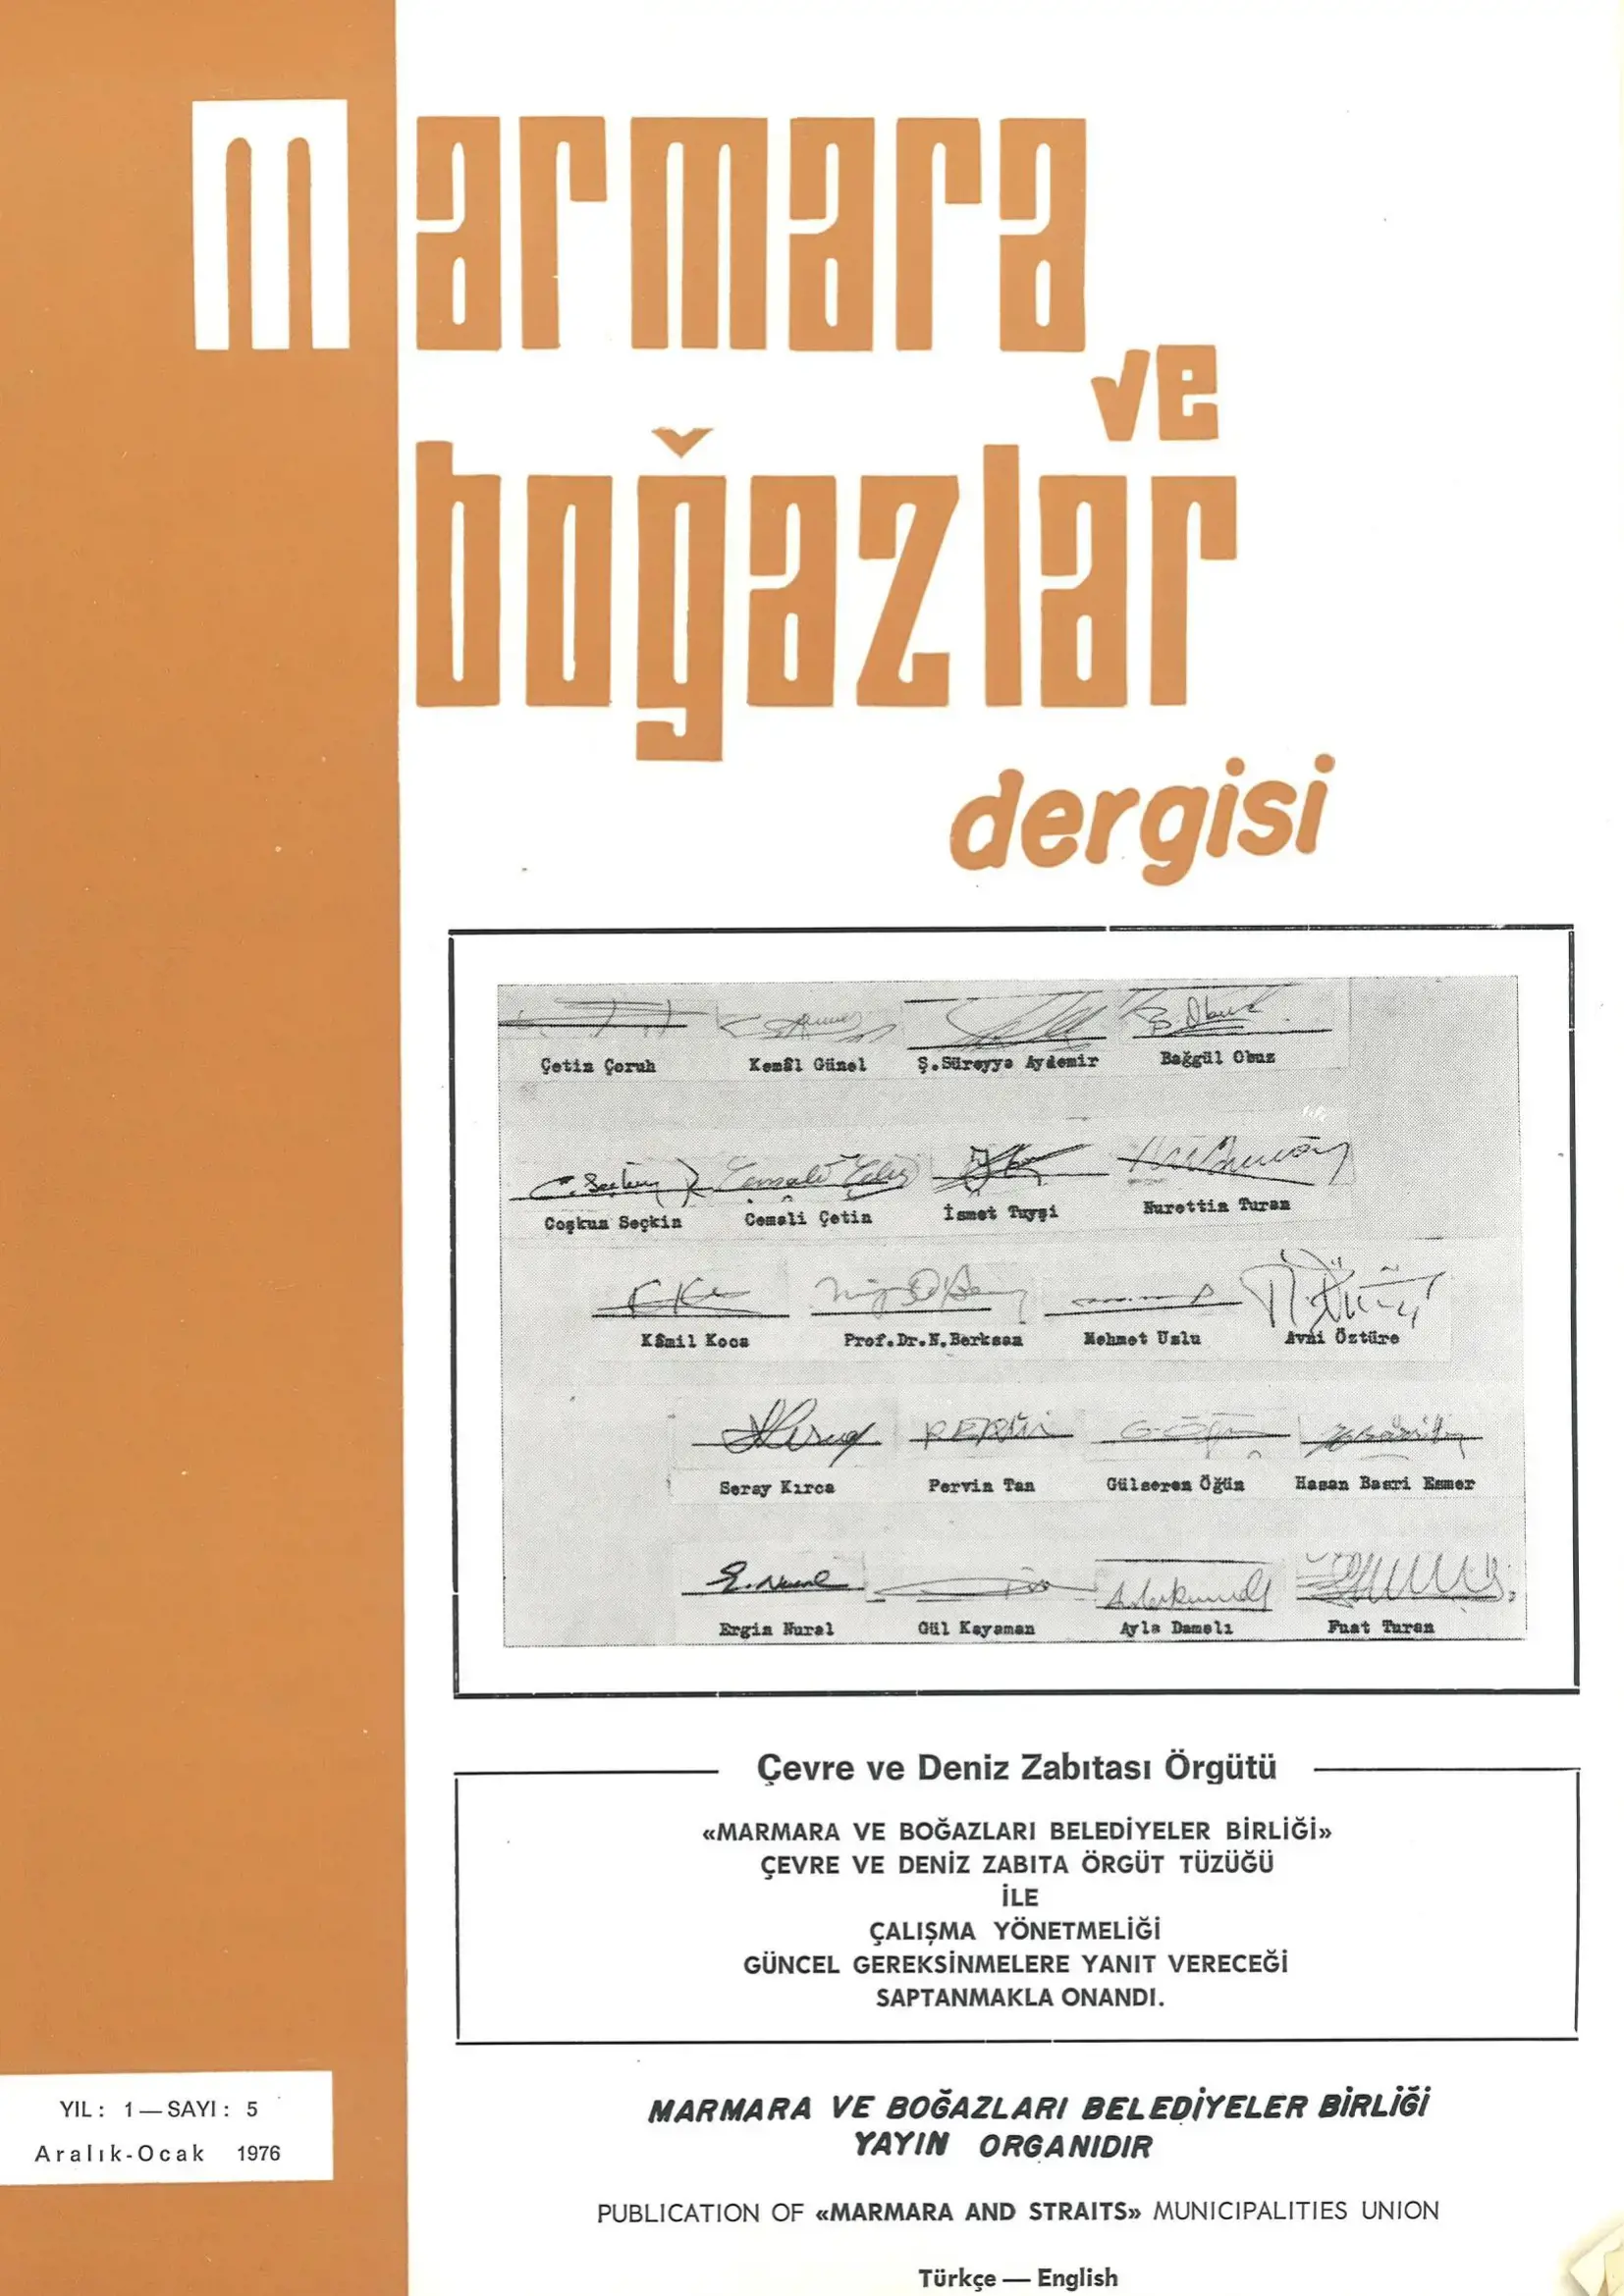 Marmara ve Boğazlar Dergisi - Aralık 1975-Ocak 1976
                                    Resmi